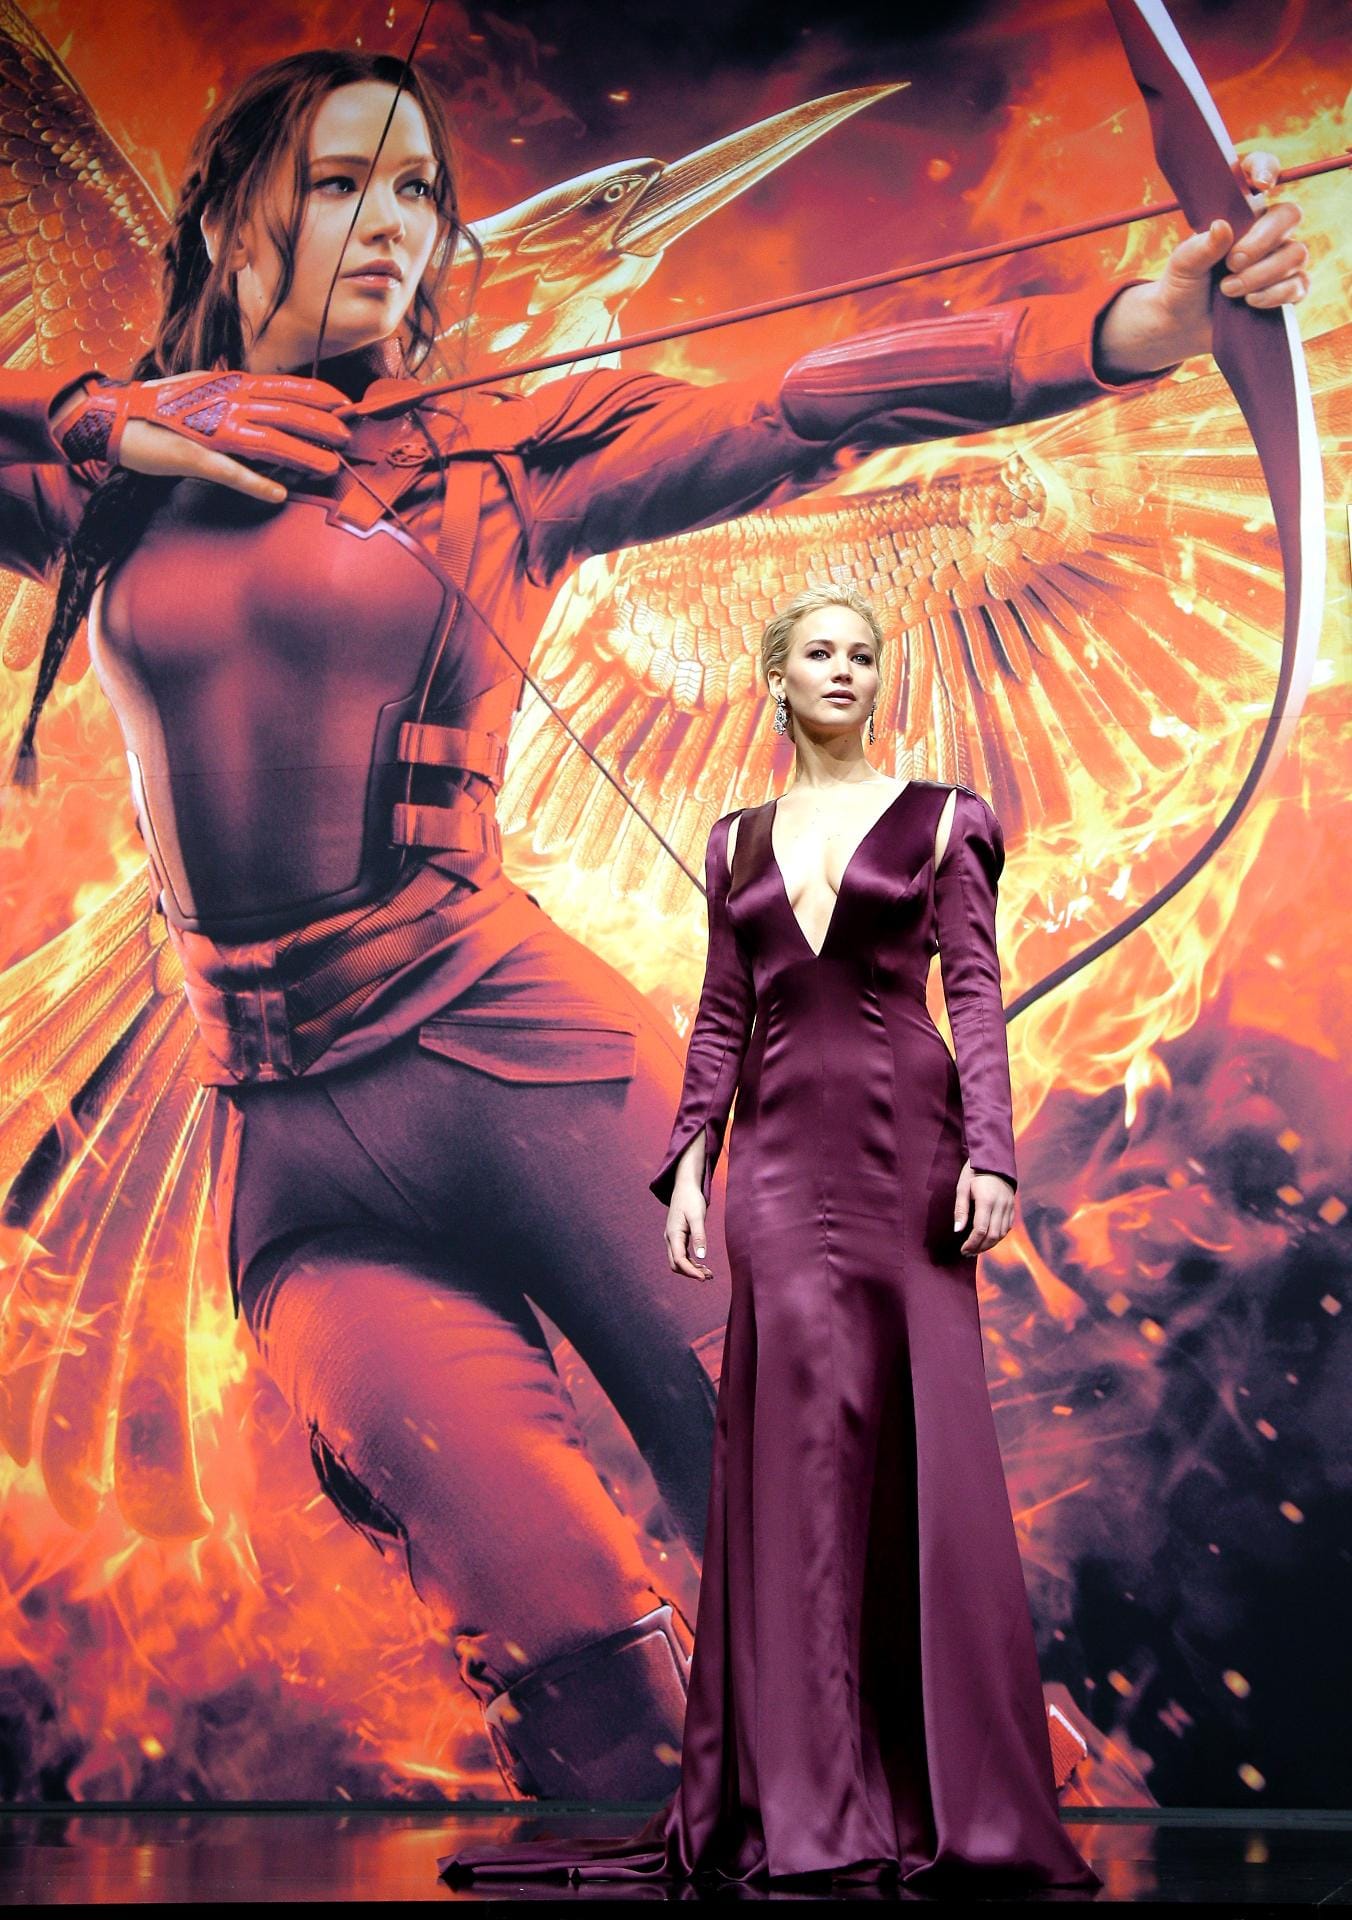 Die Darstellerin der Katniss Everdeen war in ihrer violetten Robe eindeutig der Star des Abends.